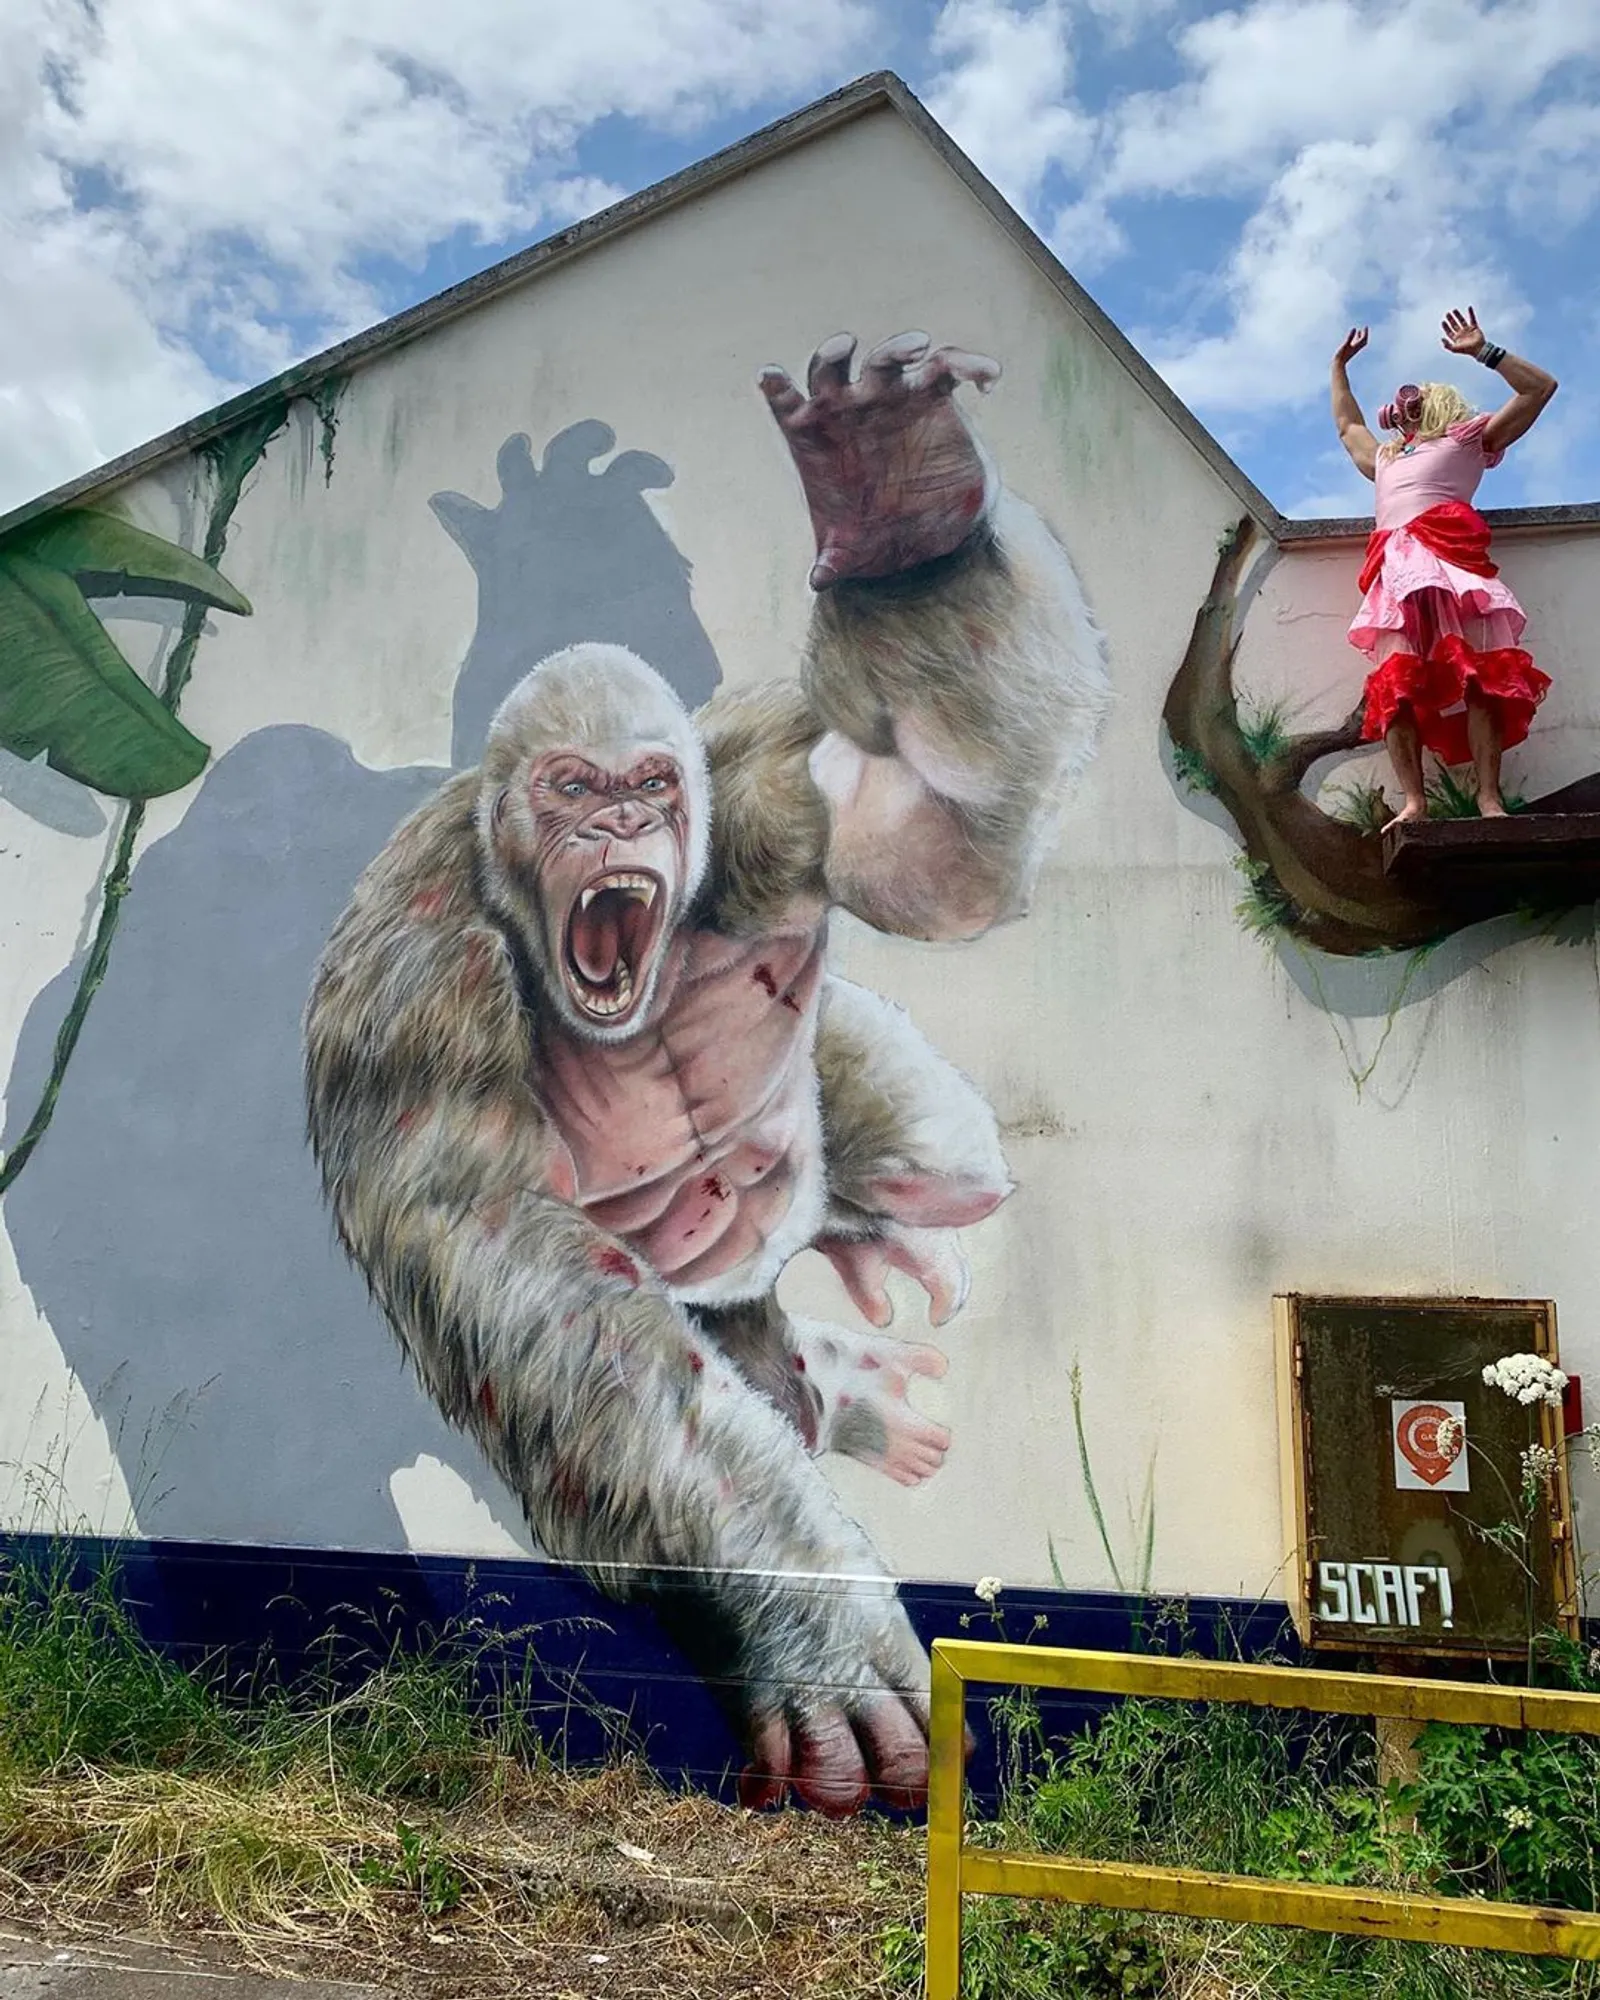 Aesthetic dan Keren, 20 Mural Ini Jadi Spot Favorit yang Instagramable